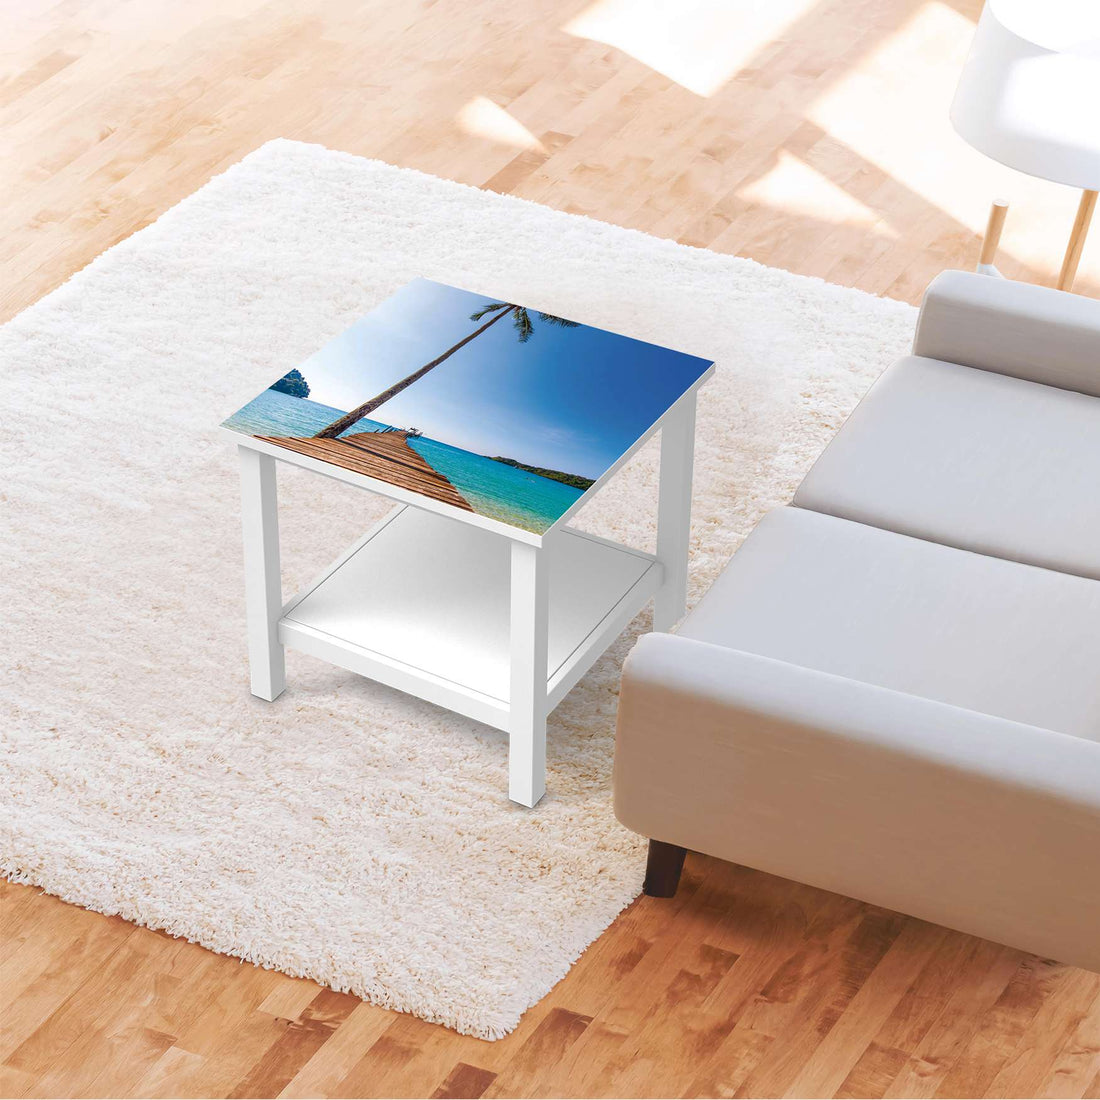 Möbel Klebefolie Caribbean - IKEA Hemnes Beistelltisch 55x55 cm - Wohnzimmer